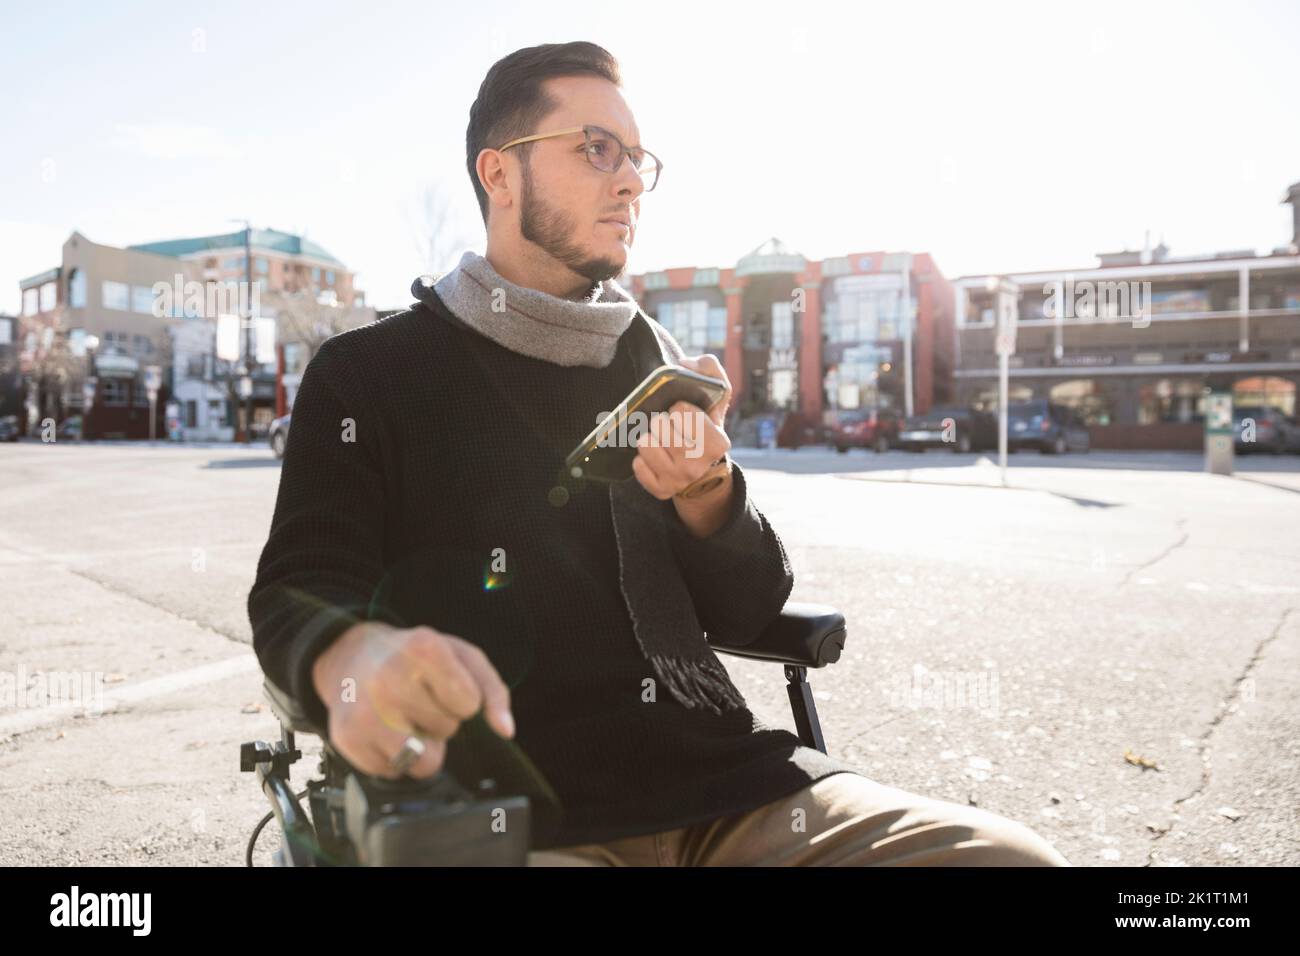 Homme en fauteuil roulant motorisé utilisant un smartphone dans une rue urbaine ensoleillée Banque D'Images